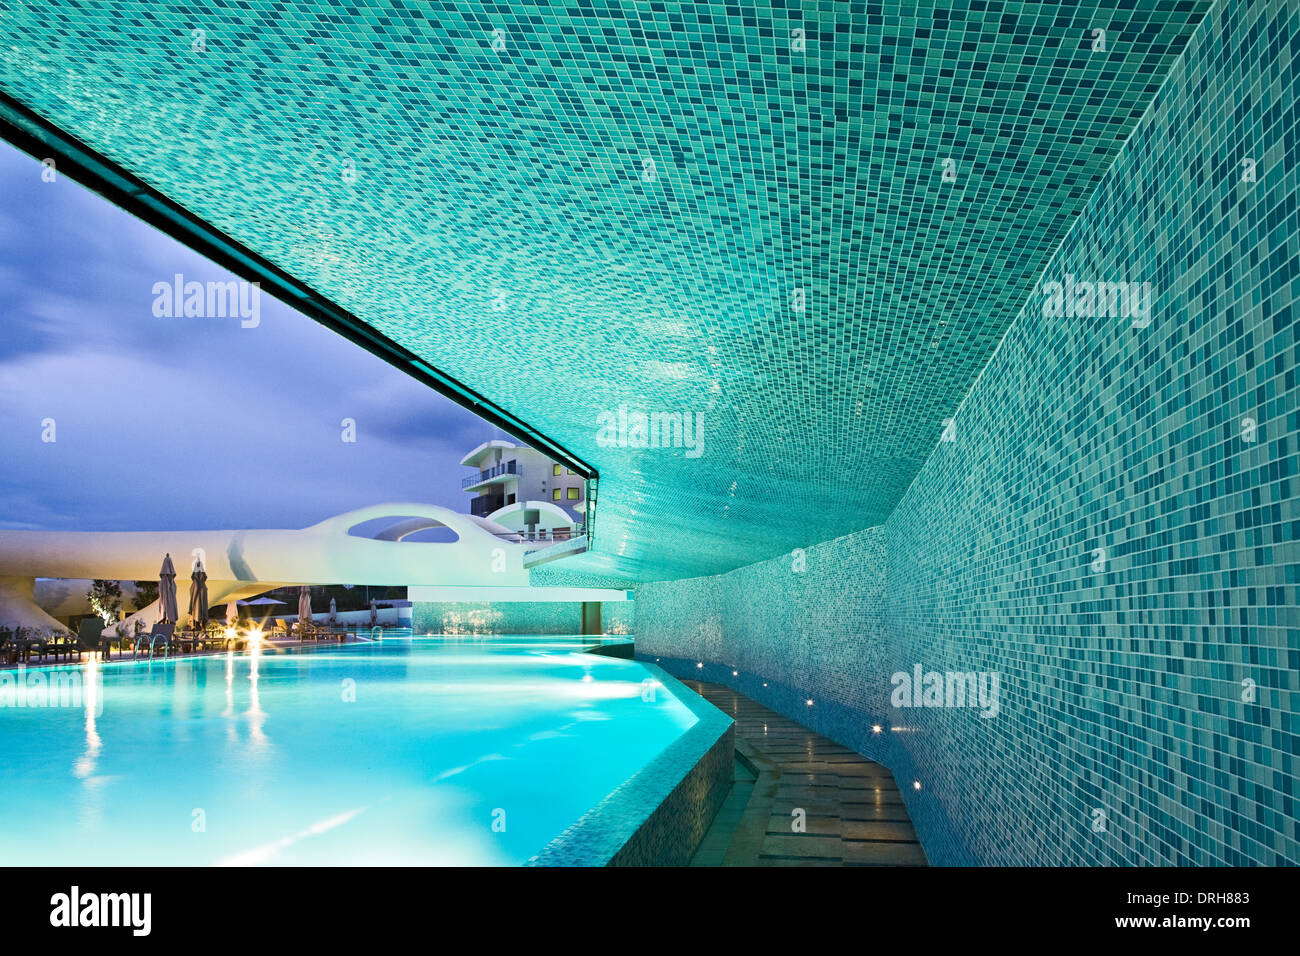 Pool views of the Cornelia Diamond, Turkey Stock Photo